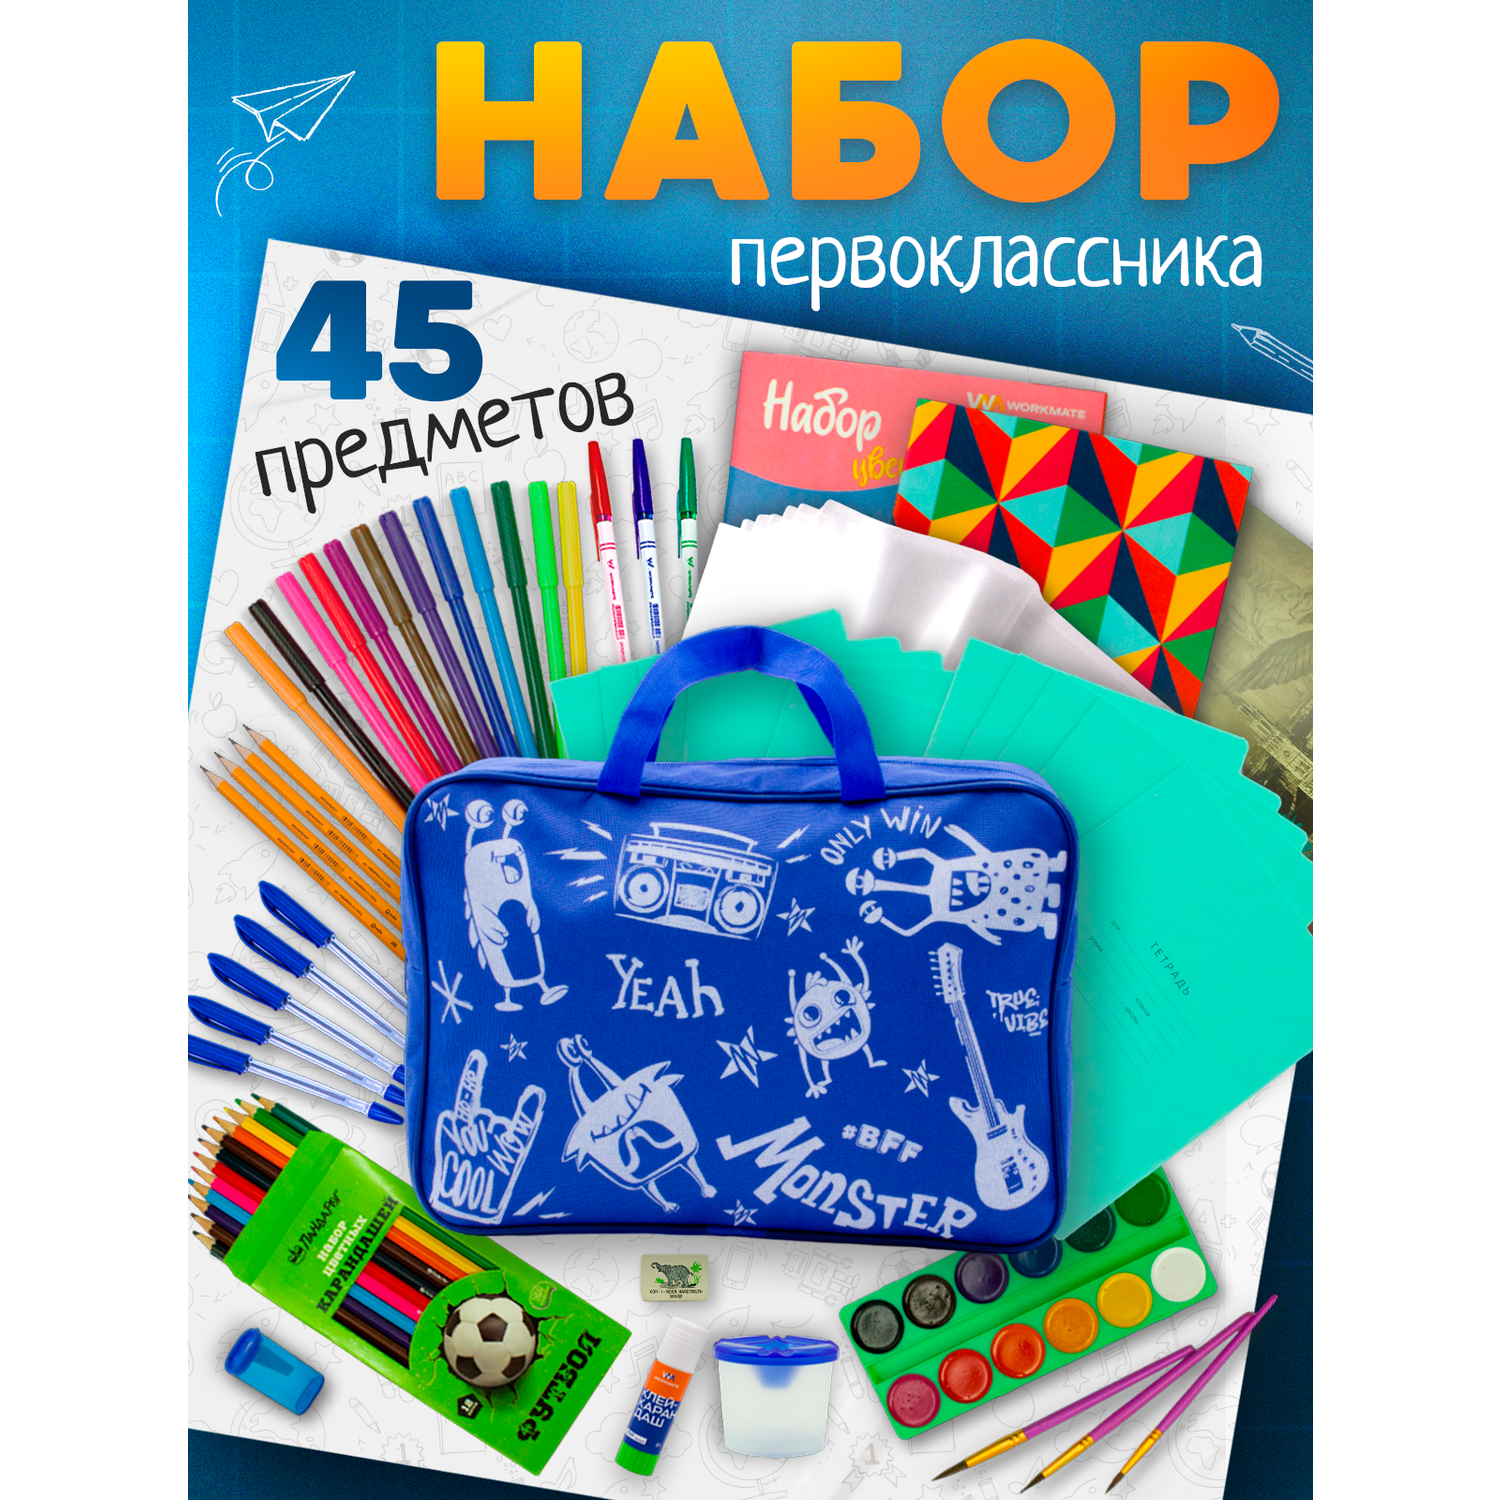 Набор первоклассника ПАНДАРОГ 45 предметов синяя сумка - фото 1